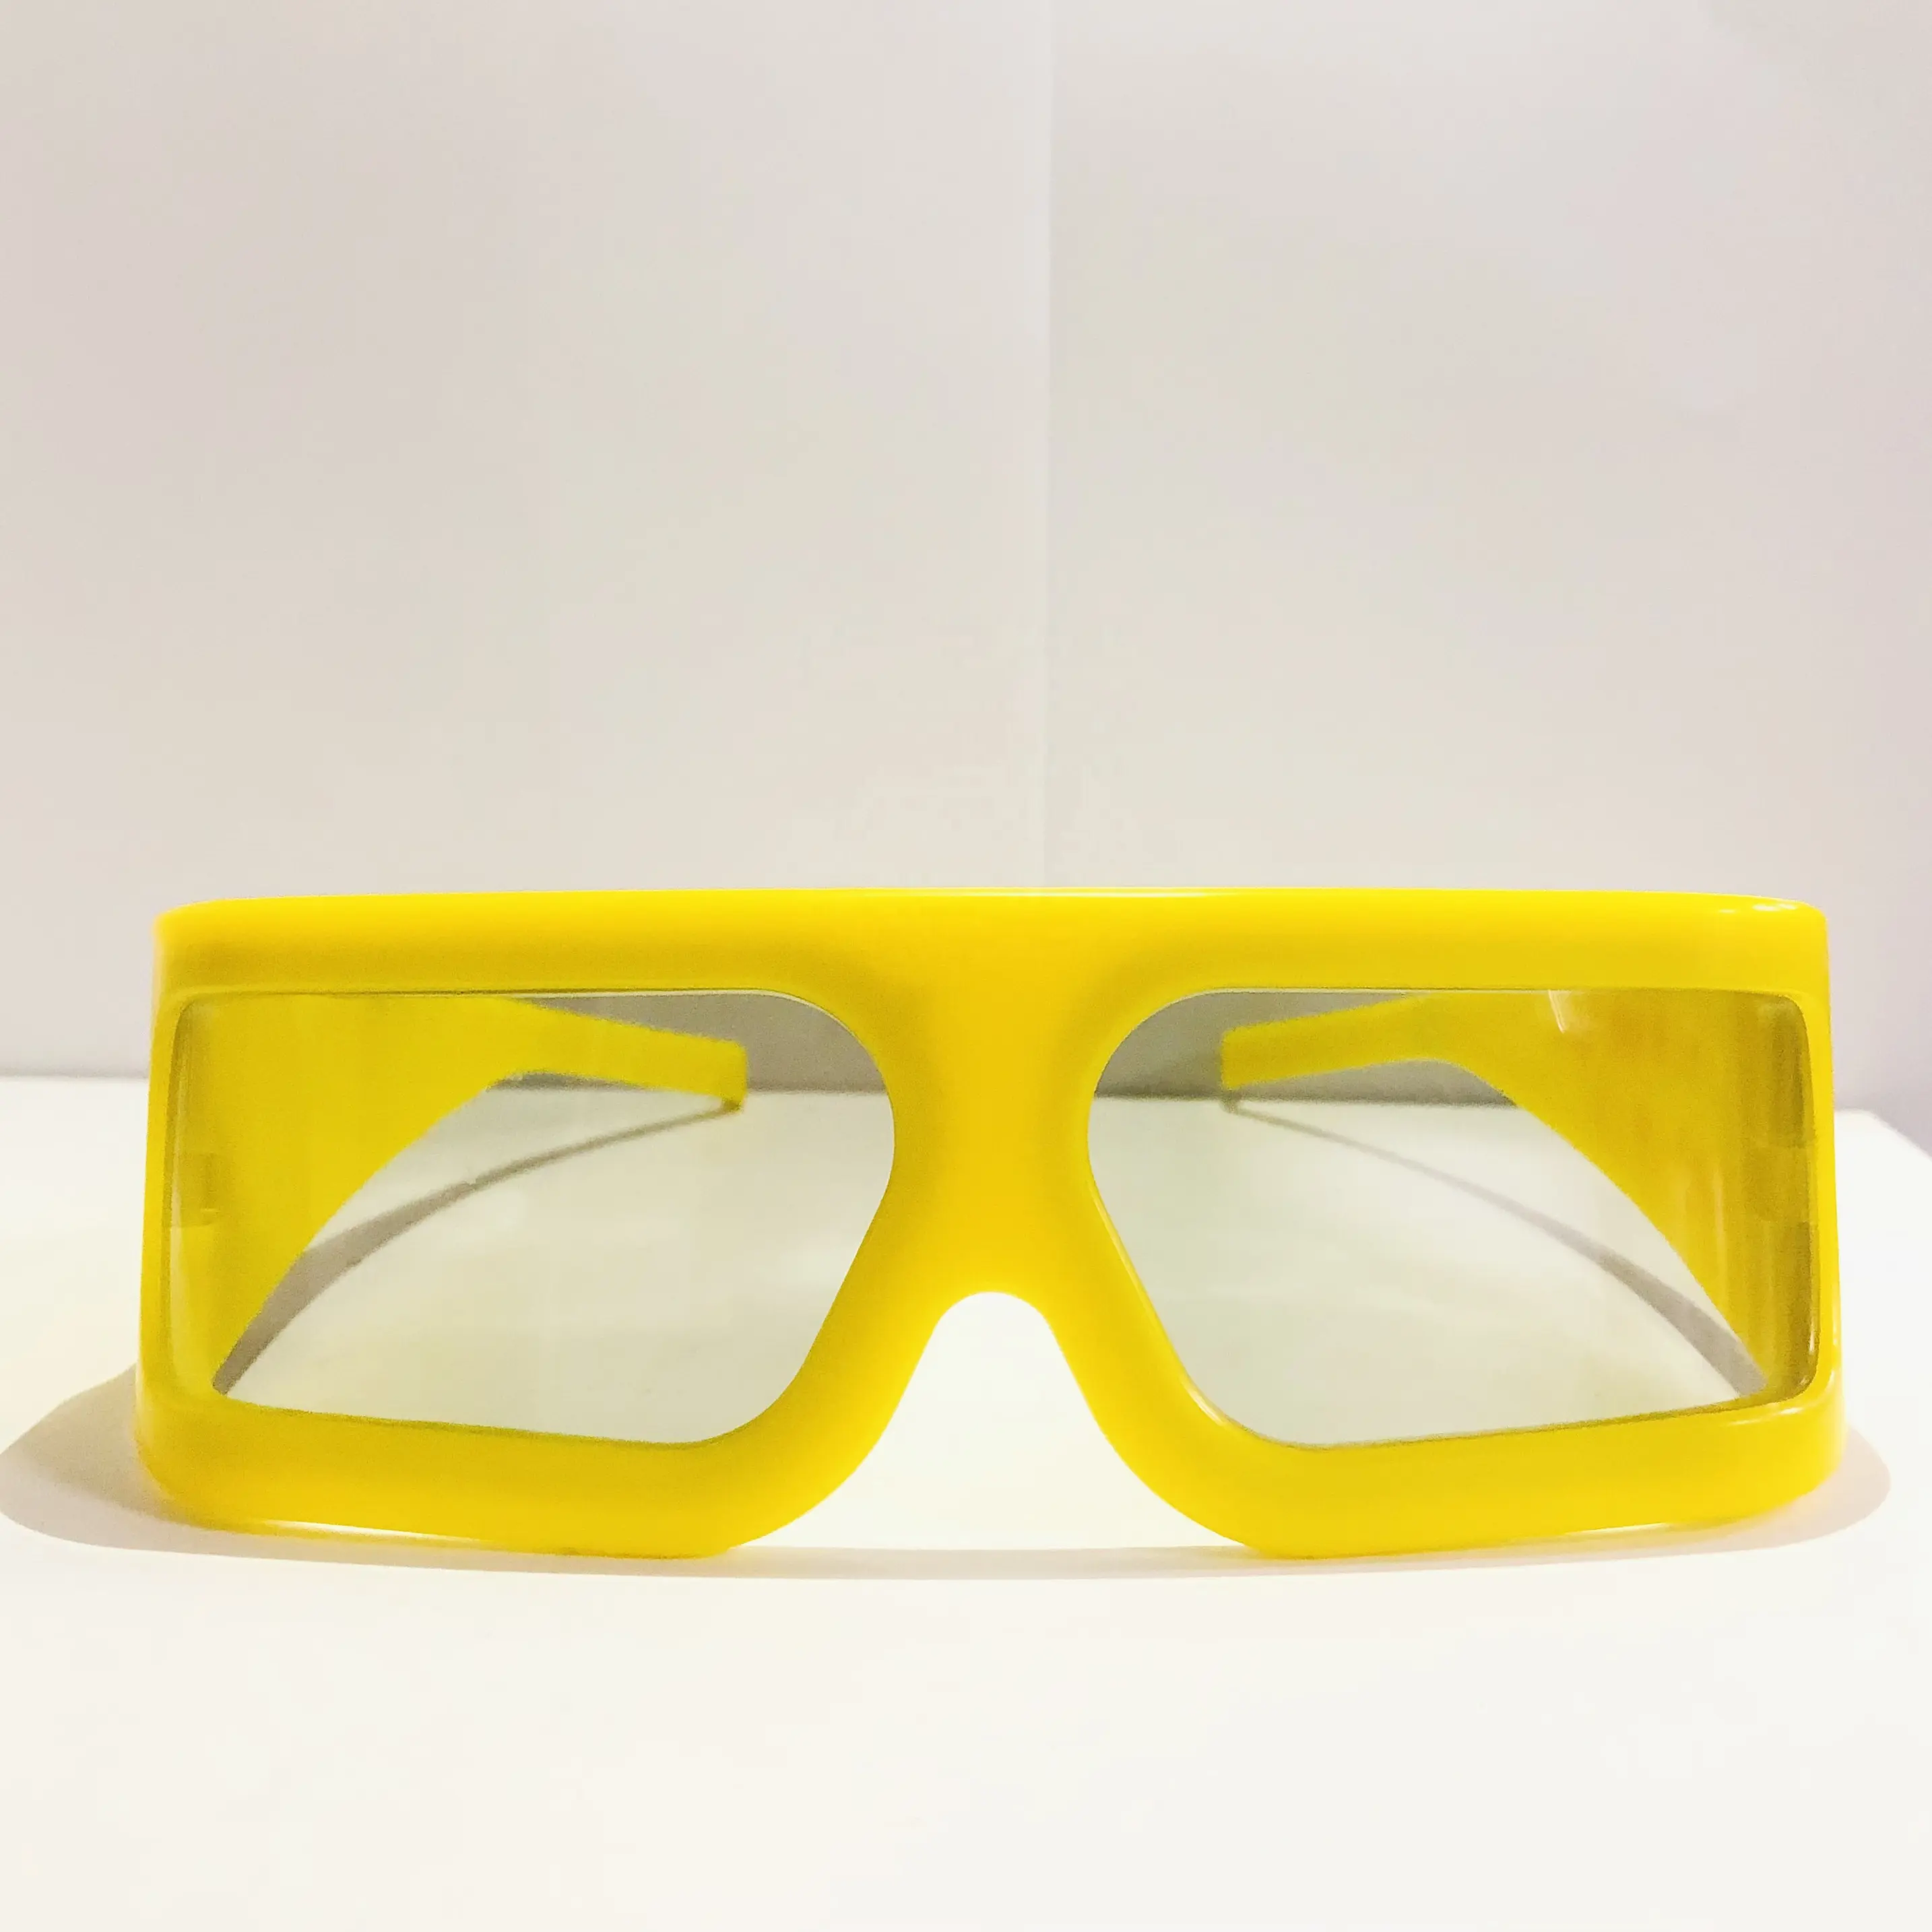 Intrattenimento AR/4D/5D/6D/IMAX/RD/X-D/universale 3D occhiali Cinema 3d polarizzati passivi 3D occhiali colorati spessore 3D M